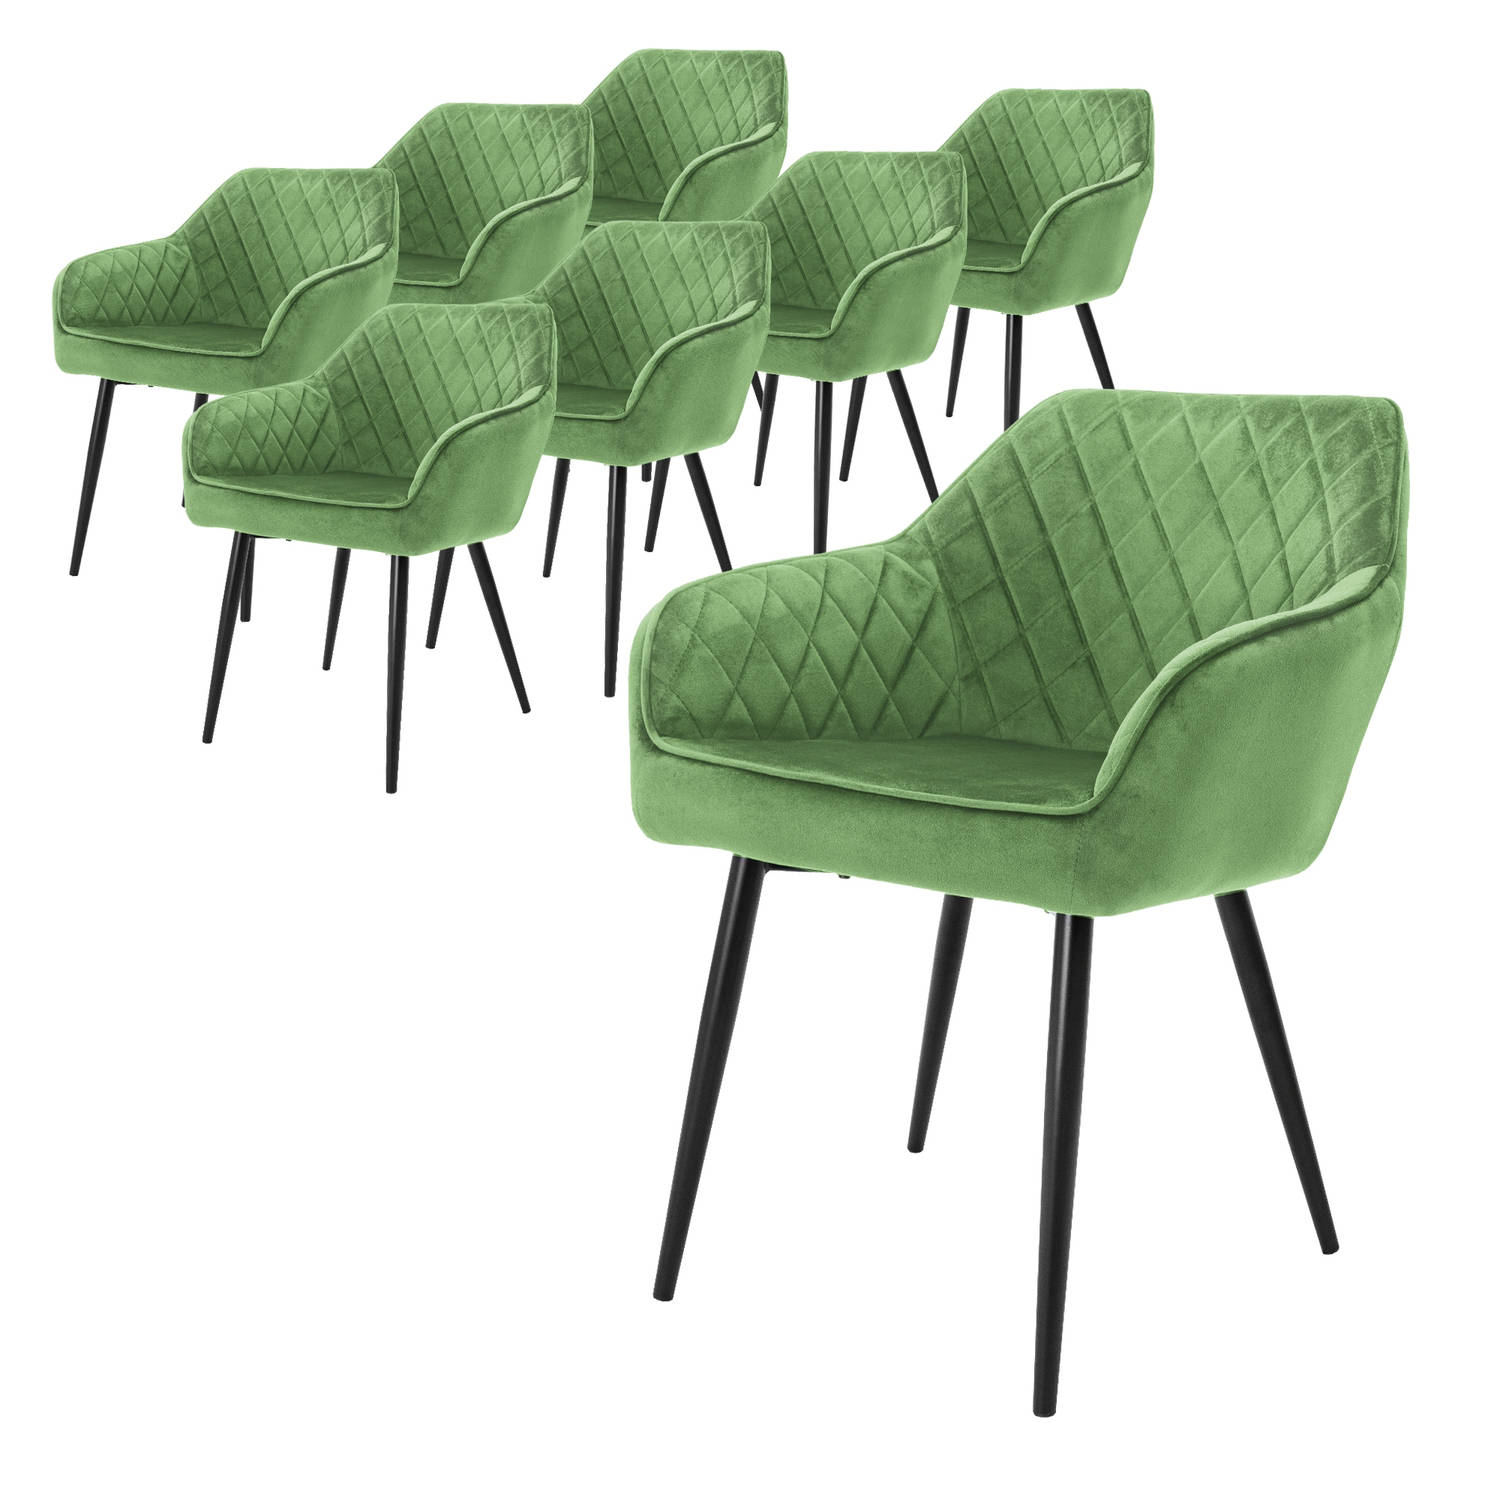 ML-Design set van 8 eetkamerstoelen met armleuning en rugleuning, groen, keukenstoel met fluwelen bekleding, gestoffeerde stoel met metalen poten, ergonomische stoel voor eettafel,